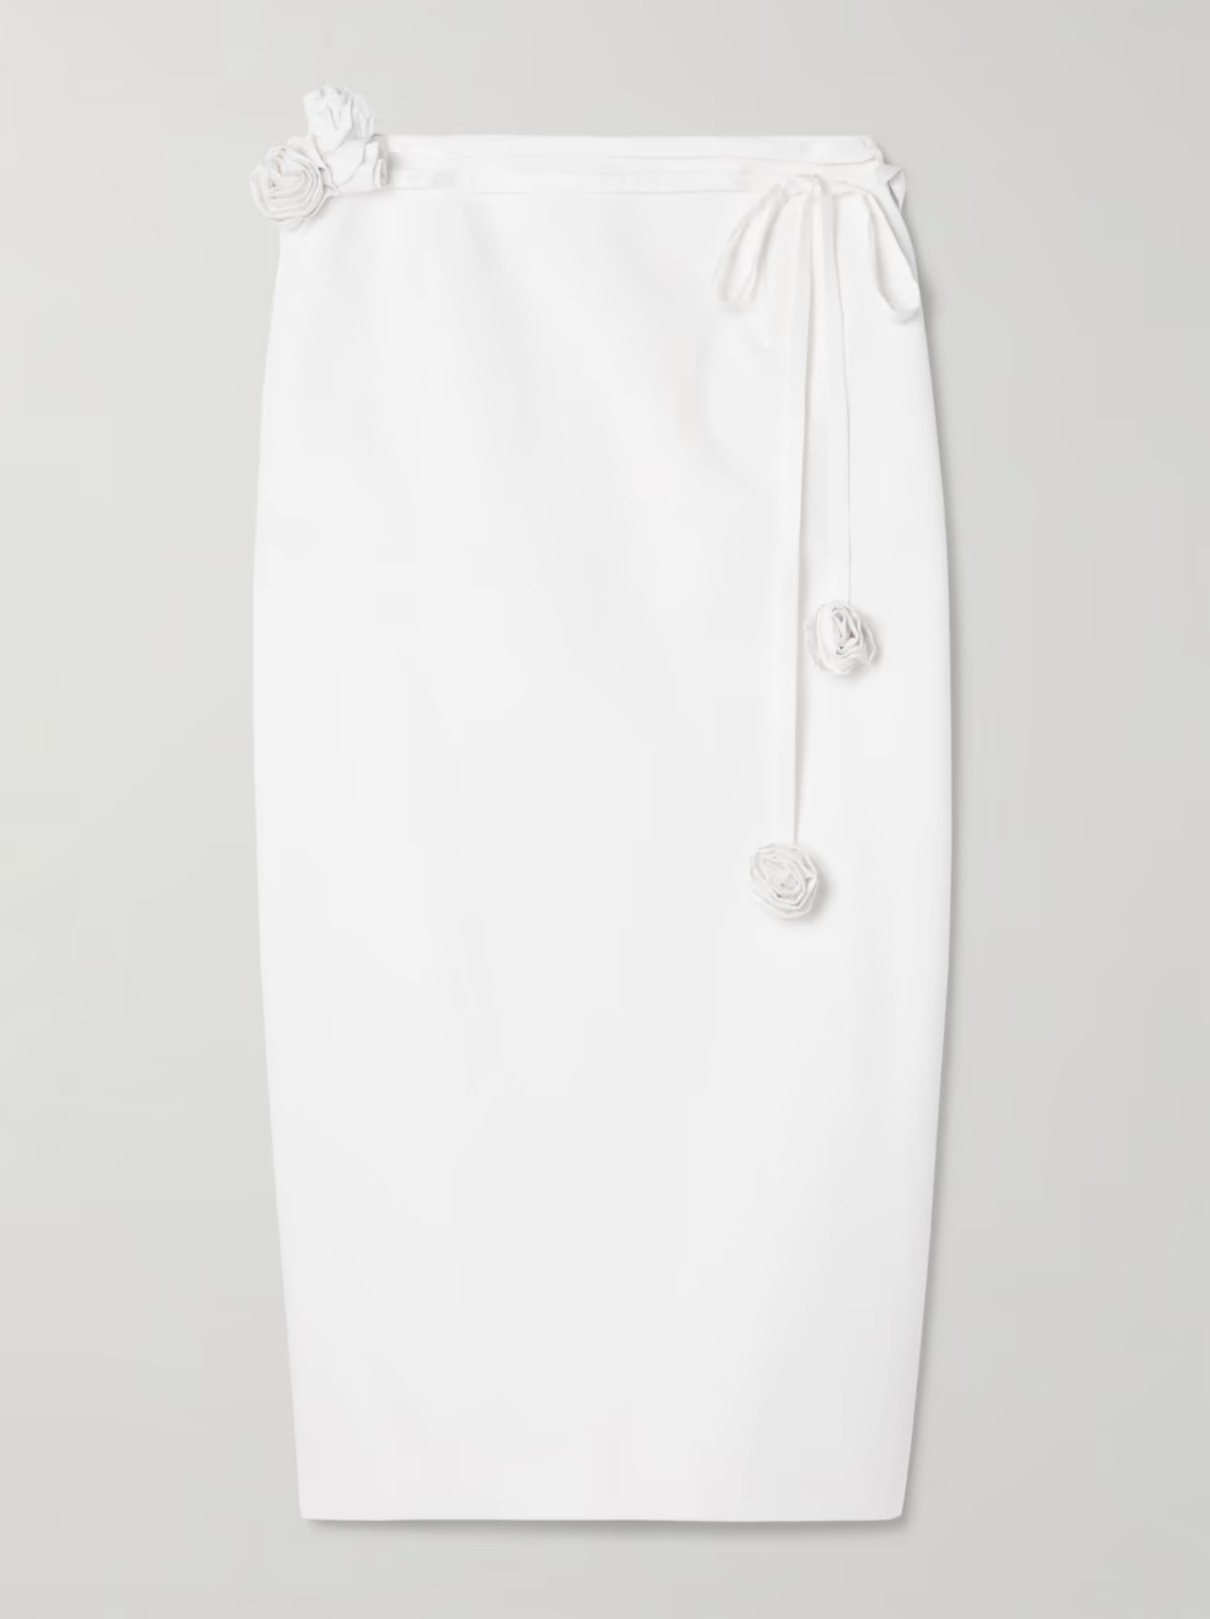 Где купить длинную белую юбку как у Вероники Жангаловой?